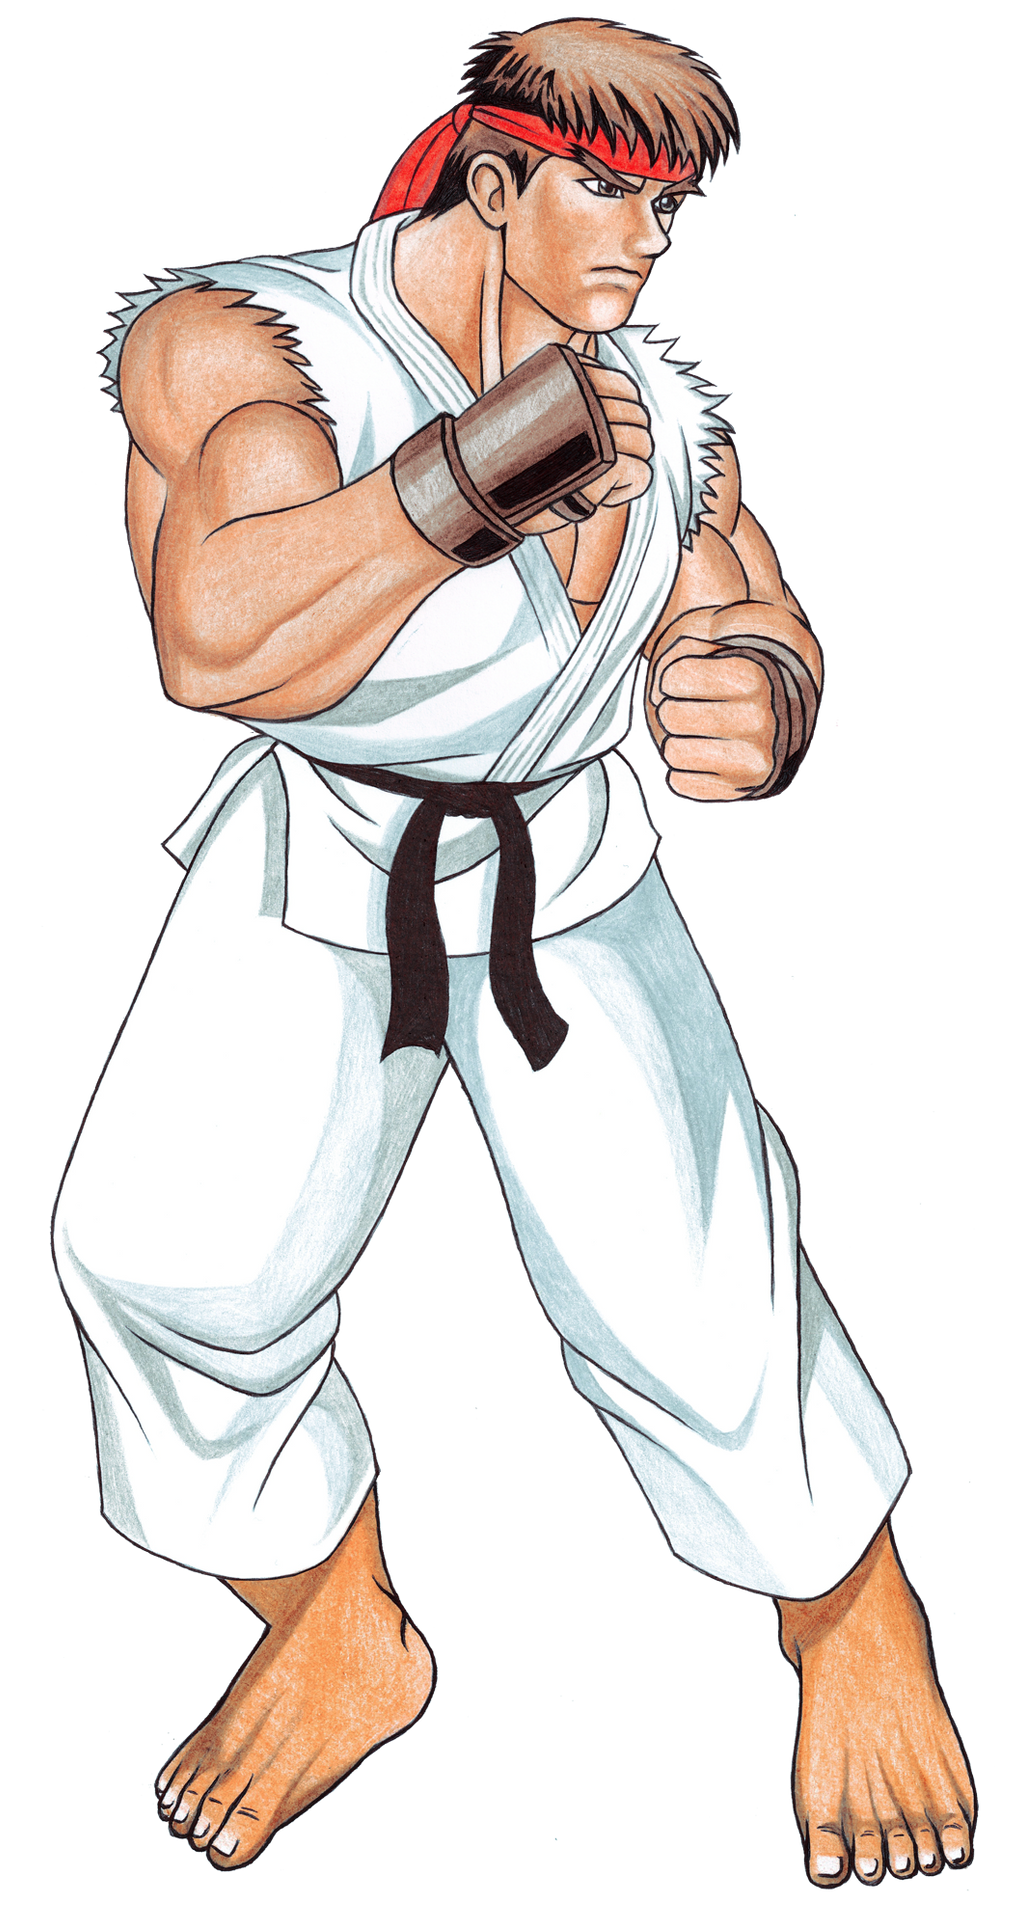 Ryu Street Fighter II Sprite HD by tyller16 on DeviantArt